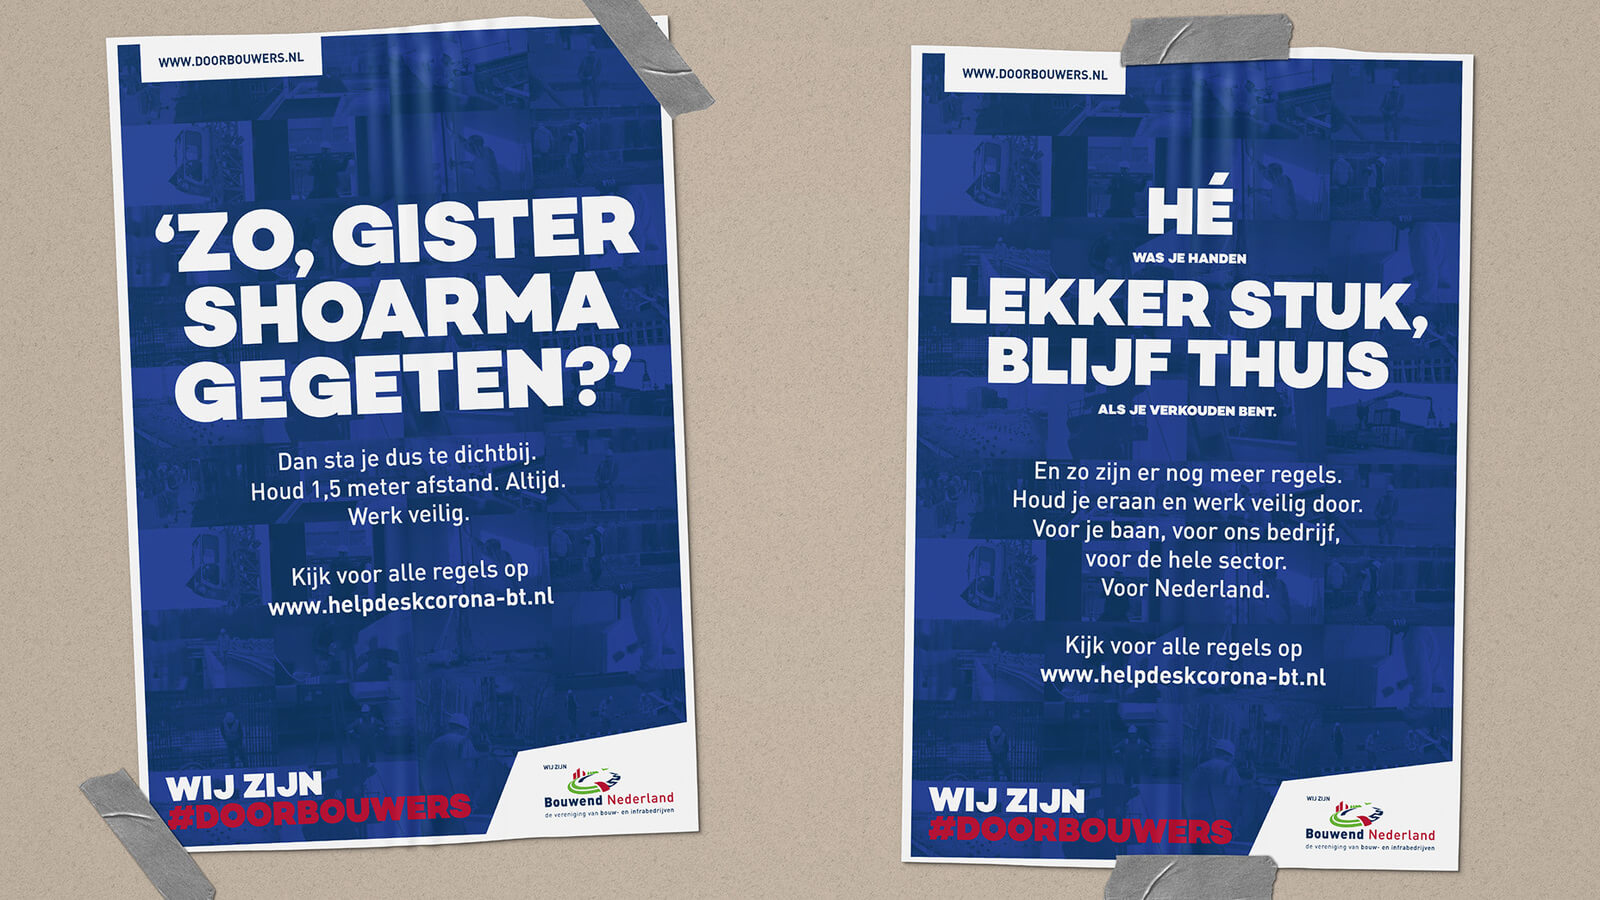 Twee voorbeelden van campagne posters voor #doorbouwers die inhaken op de corona maatregelen.